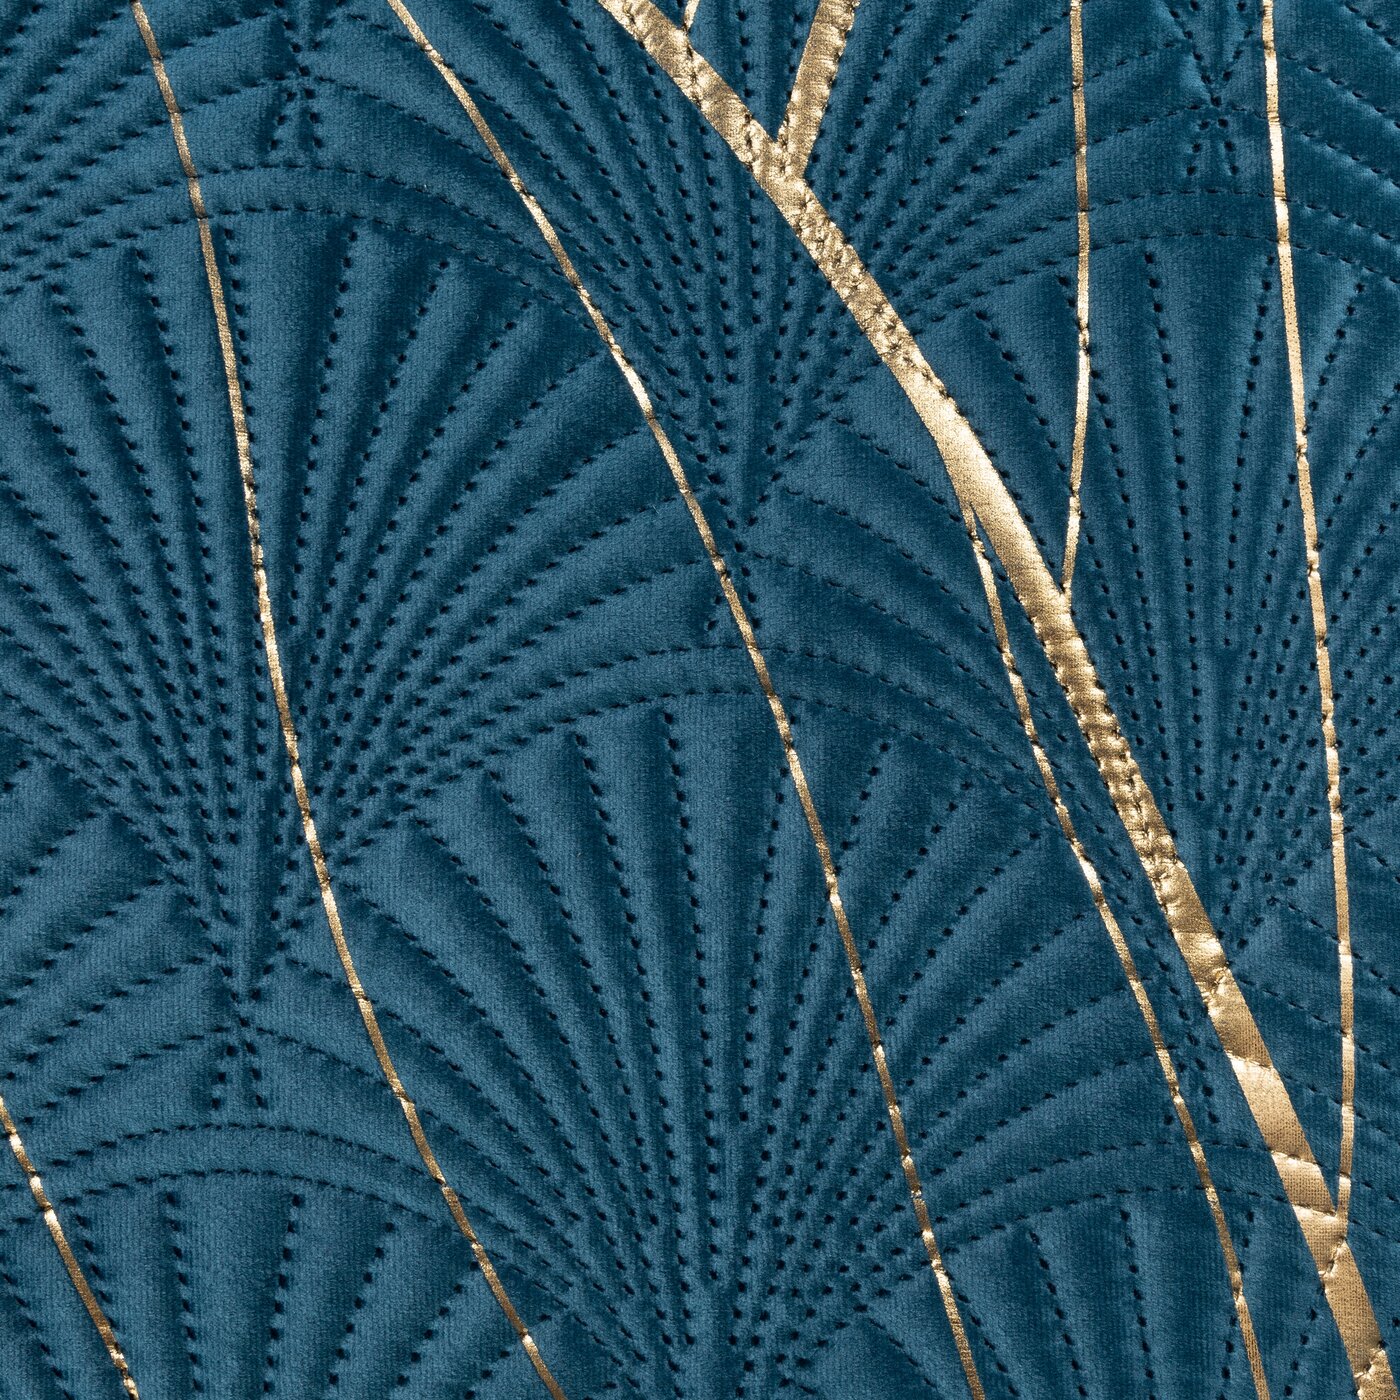 Cuvertură de Pat cu imprimeu auriu flori de lotus, matlasare prin presare la cald bleumarin auriu Colecția Limitată LOTOS 7 Perdele de Poveste